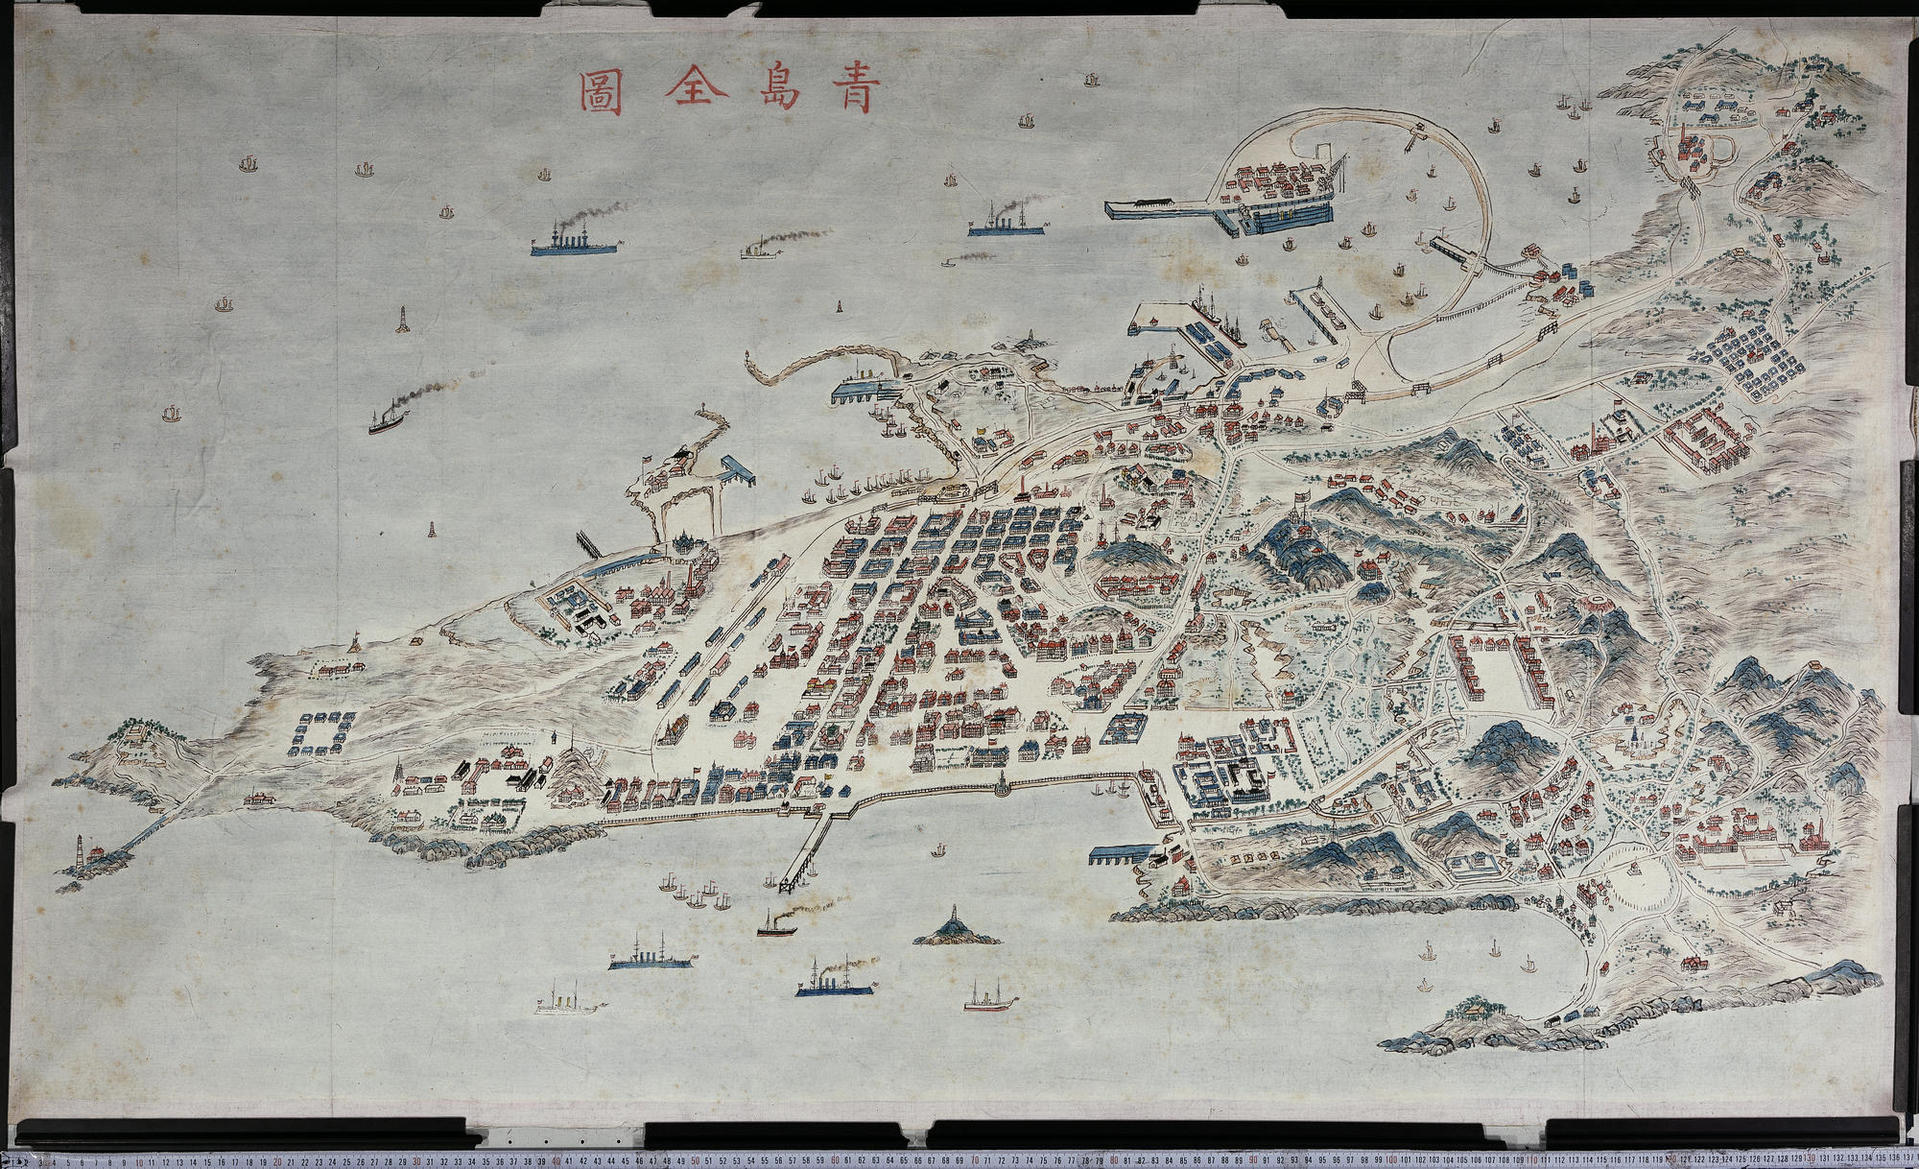 120年前的青岛鸟瞰地图首次展示,栈桥,小青岛,团岛